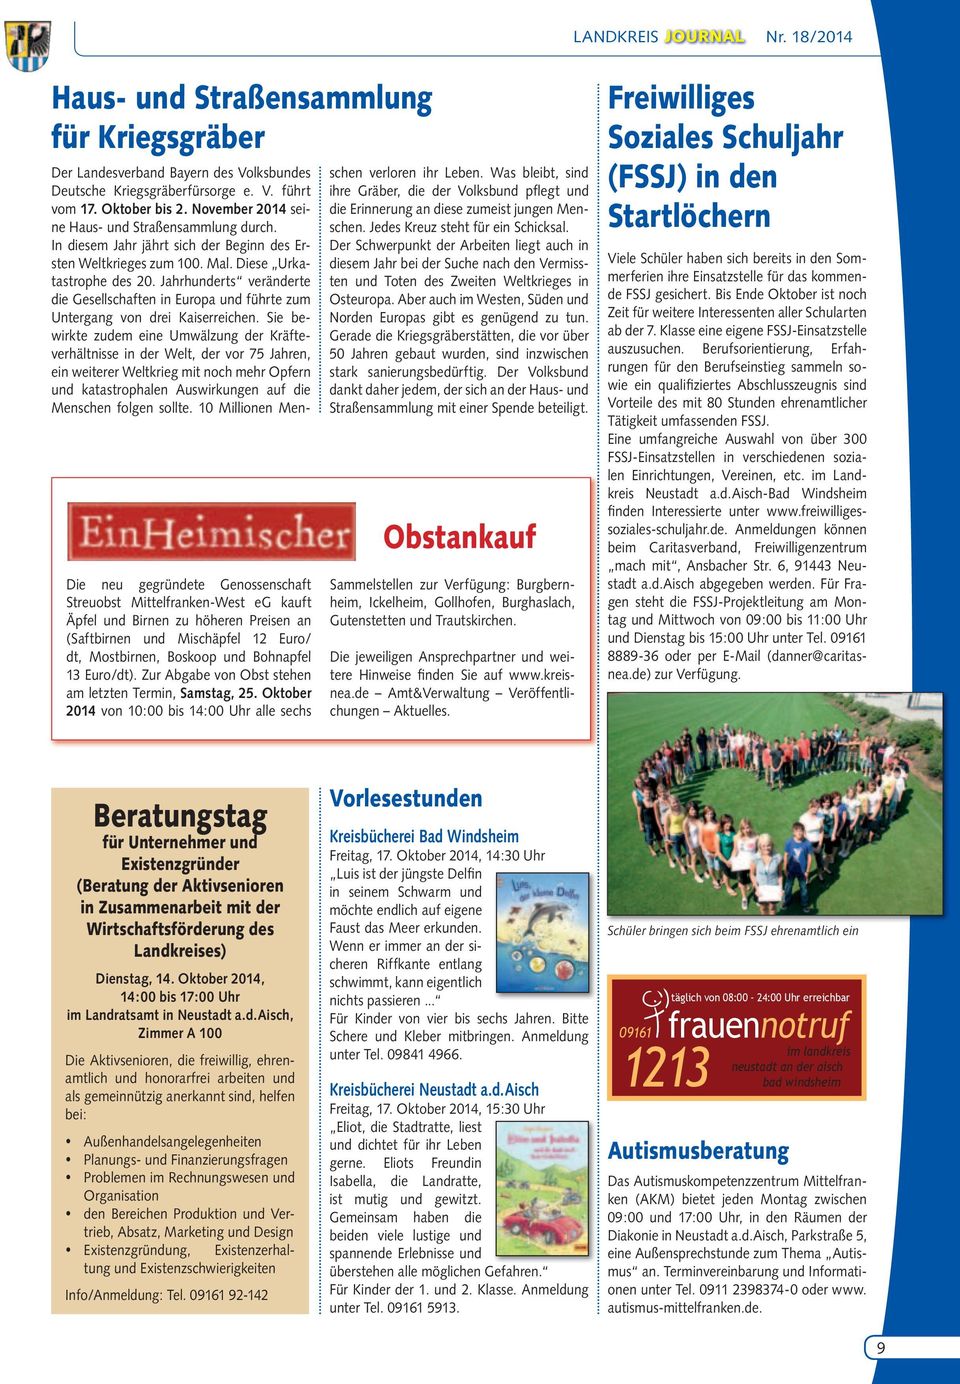 Oktober 2014 von 10:00 bis 14:00 Uhr alle sechs Der Landesverband Bayern des Volksbundes Deutsche Kriegsgräberfürsorge e. V. führt vom 17. Oktober bis 2.